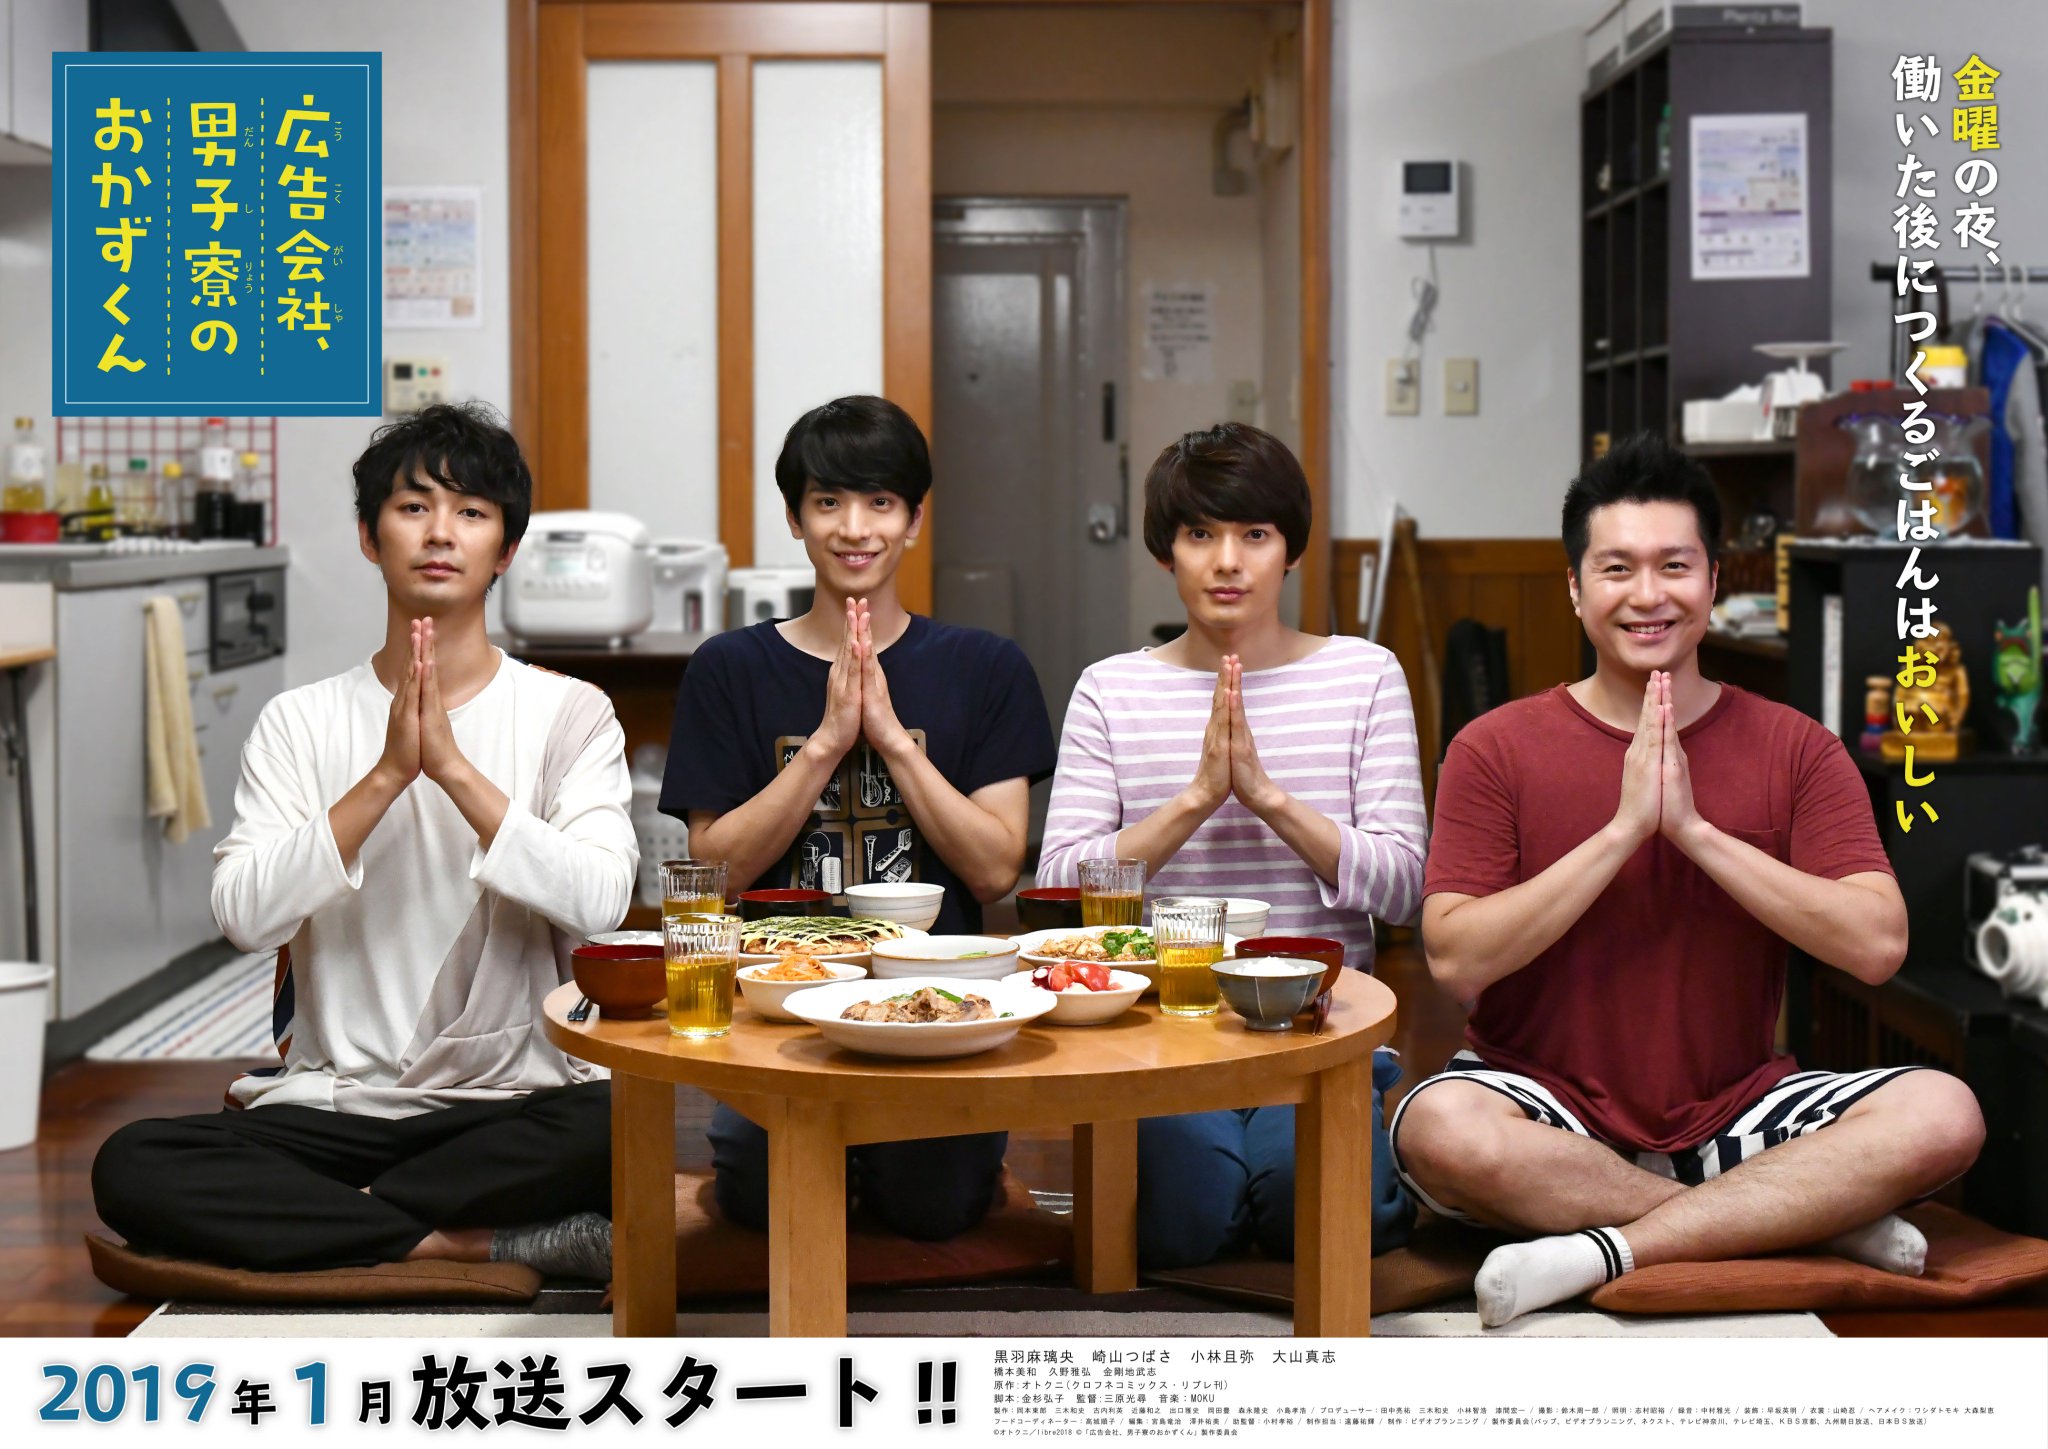 Streaming Okazu-kun in the Ad Agency's Men's Dorm (Koukoku Gaisha Danshi Ryou no Okazu-kun)